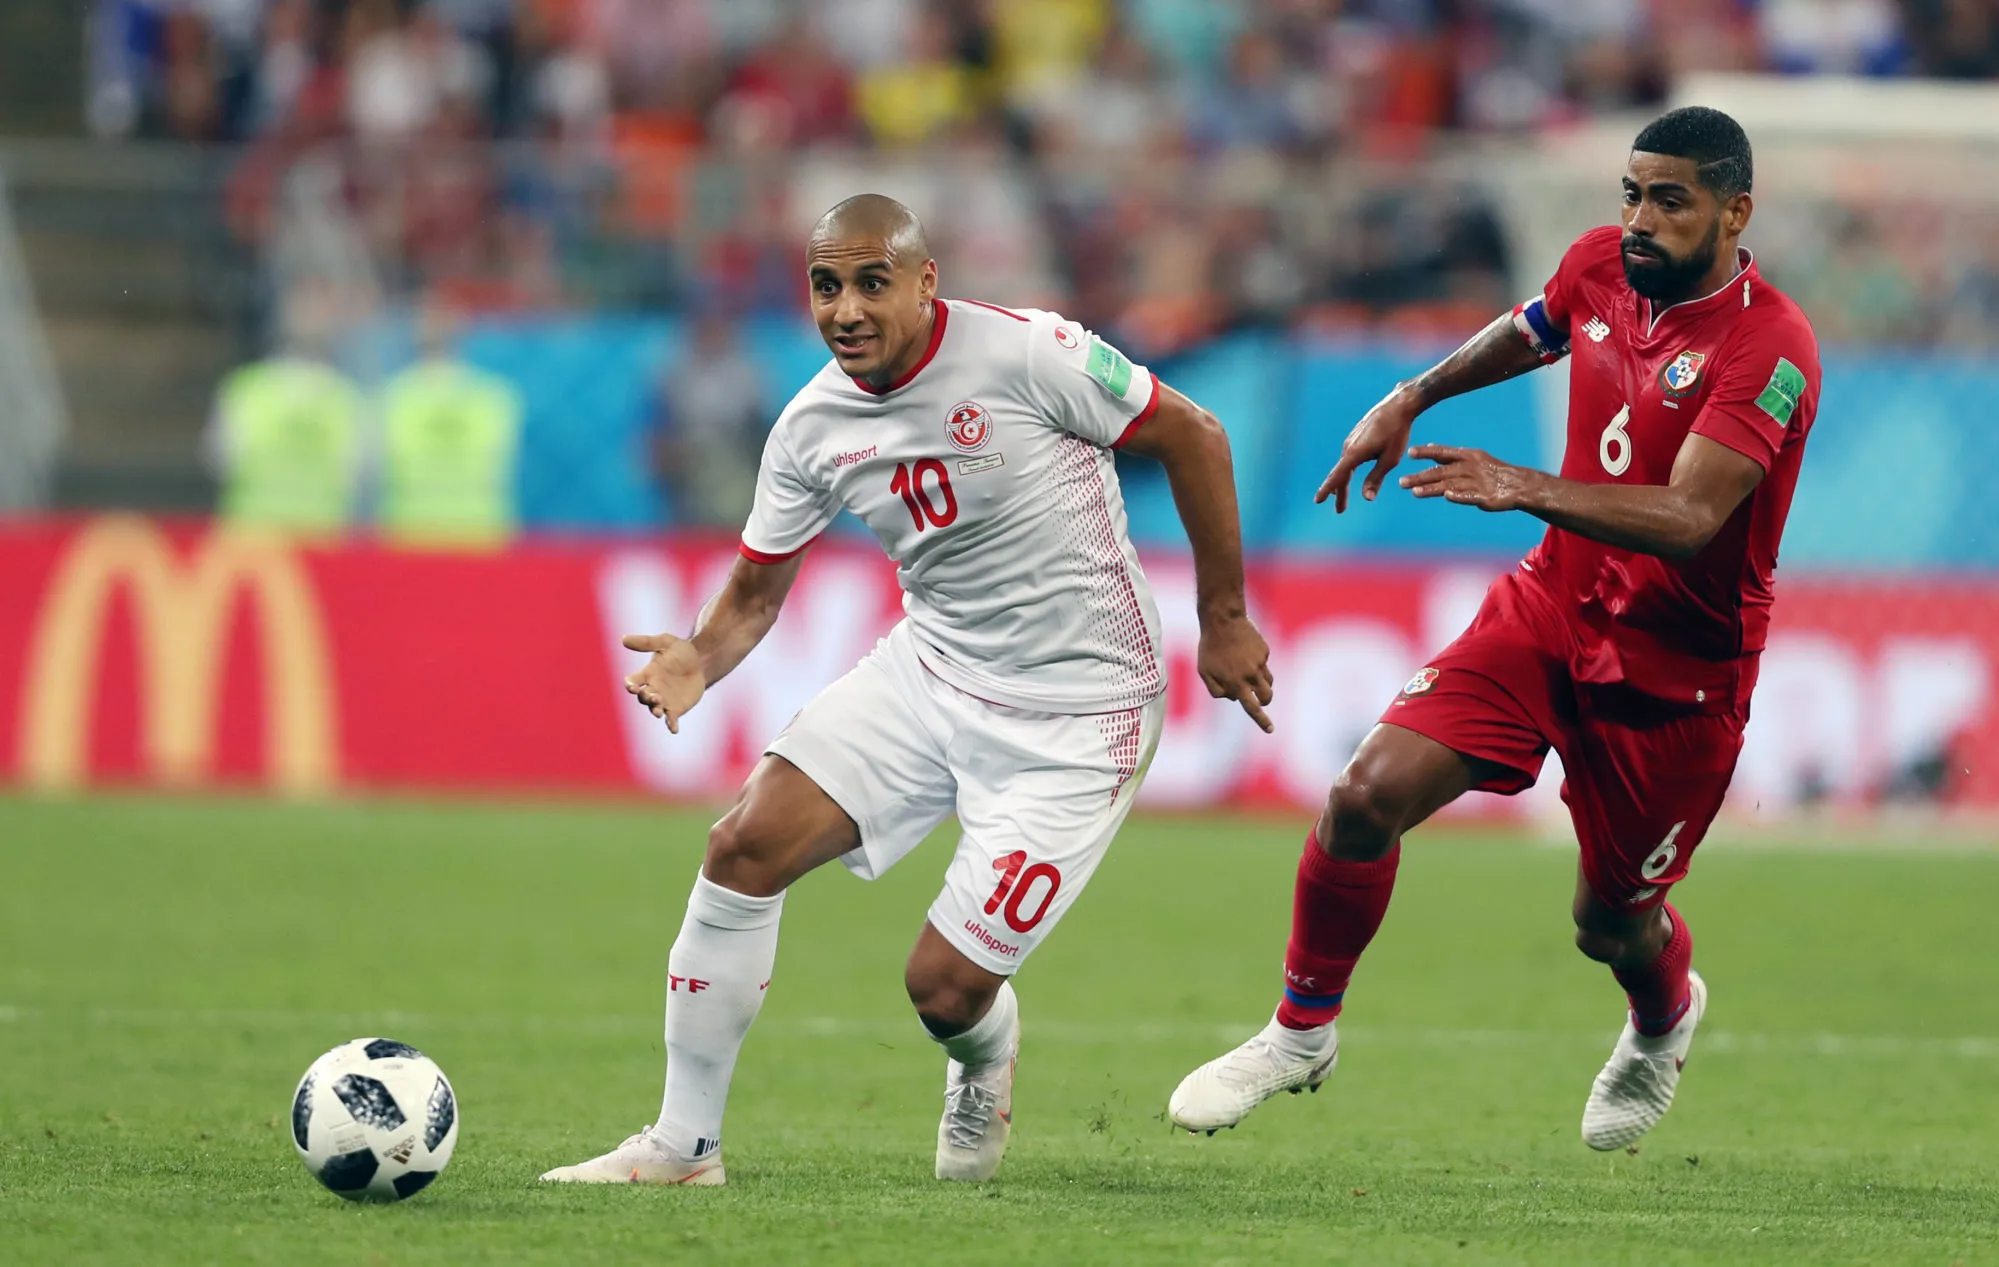 Pronostic Tunisie Angola : Analyse, prono et cotes du match de la CAN 2019